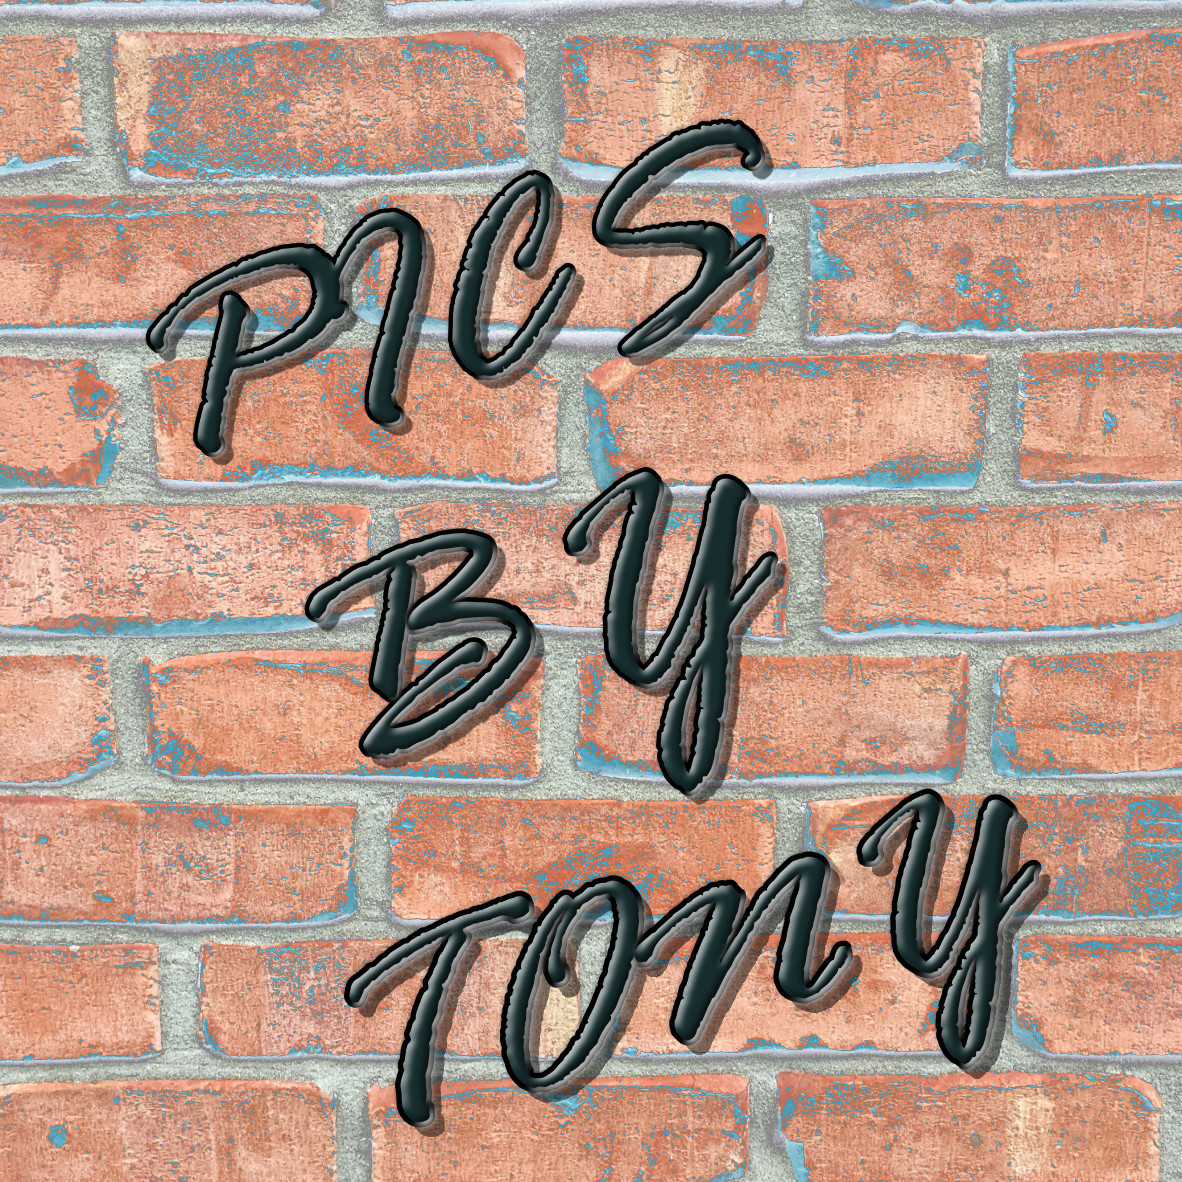 PICS BY TONY - Website